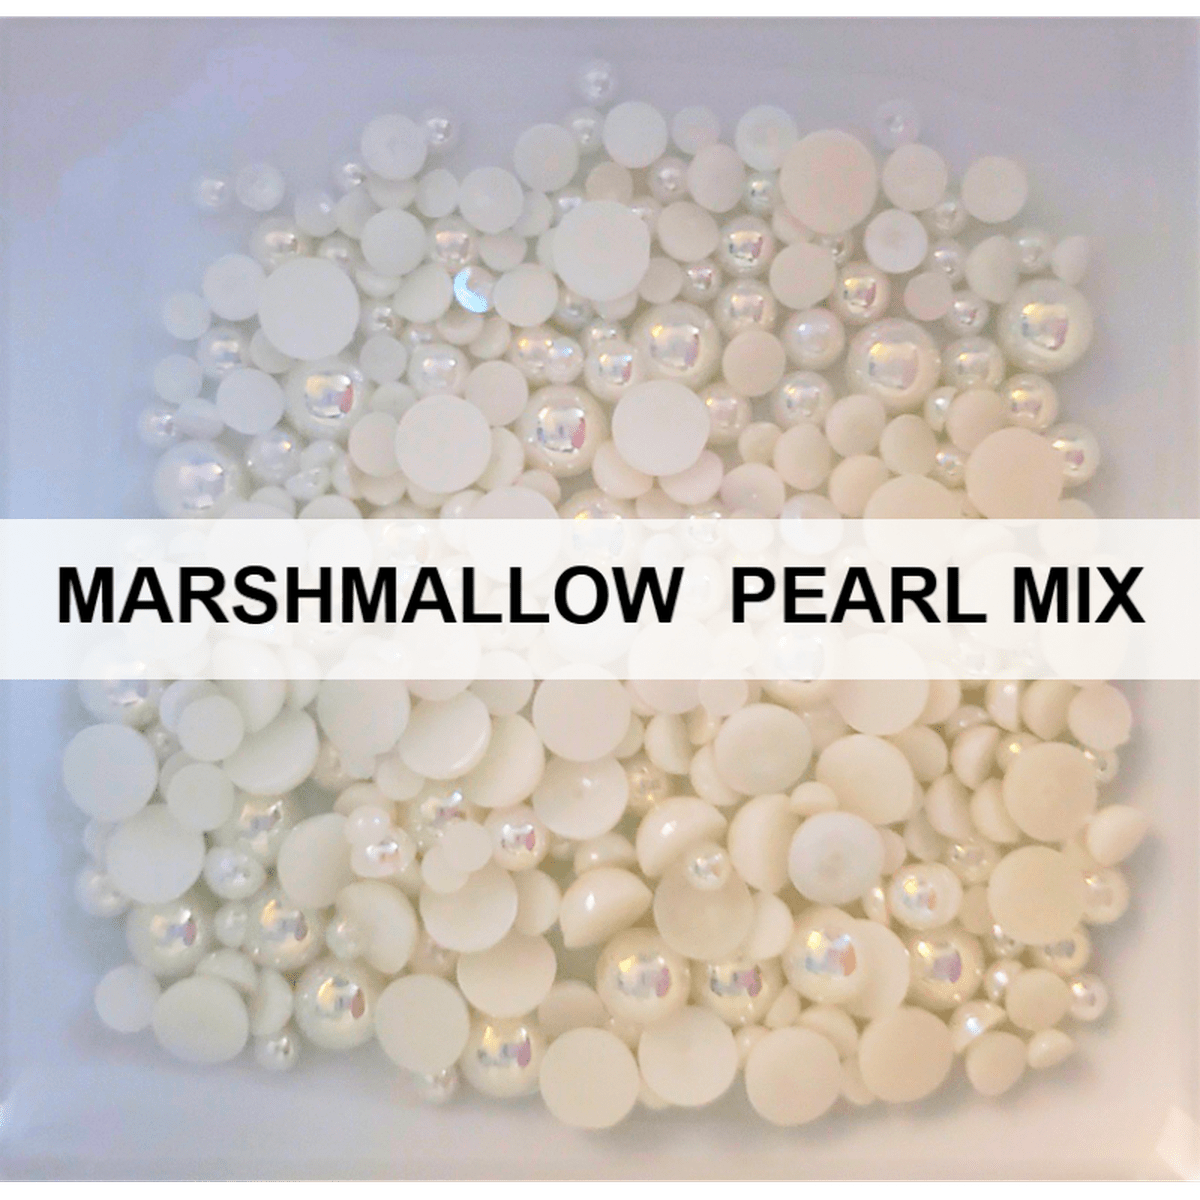 Marshmallow Pearl Mix